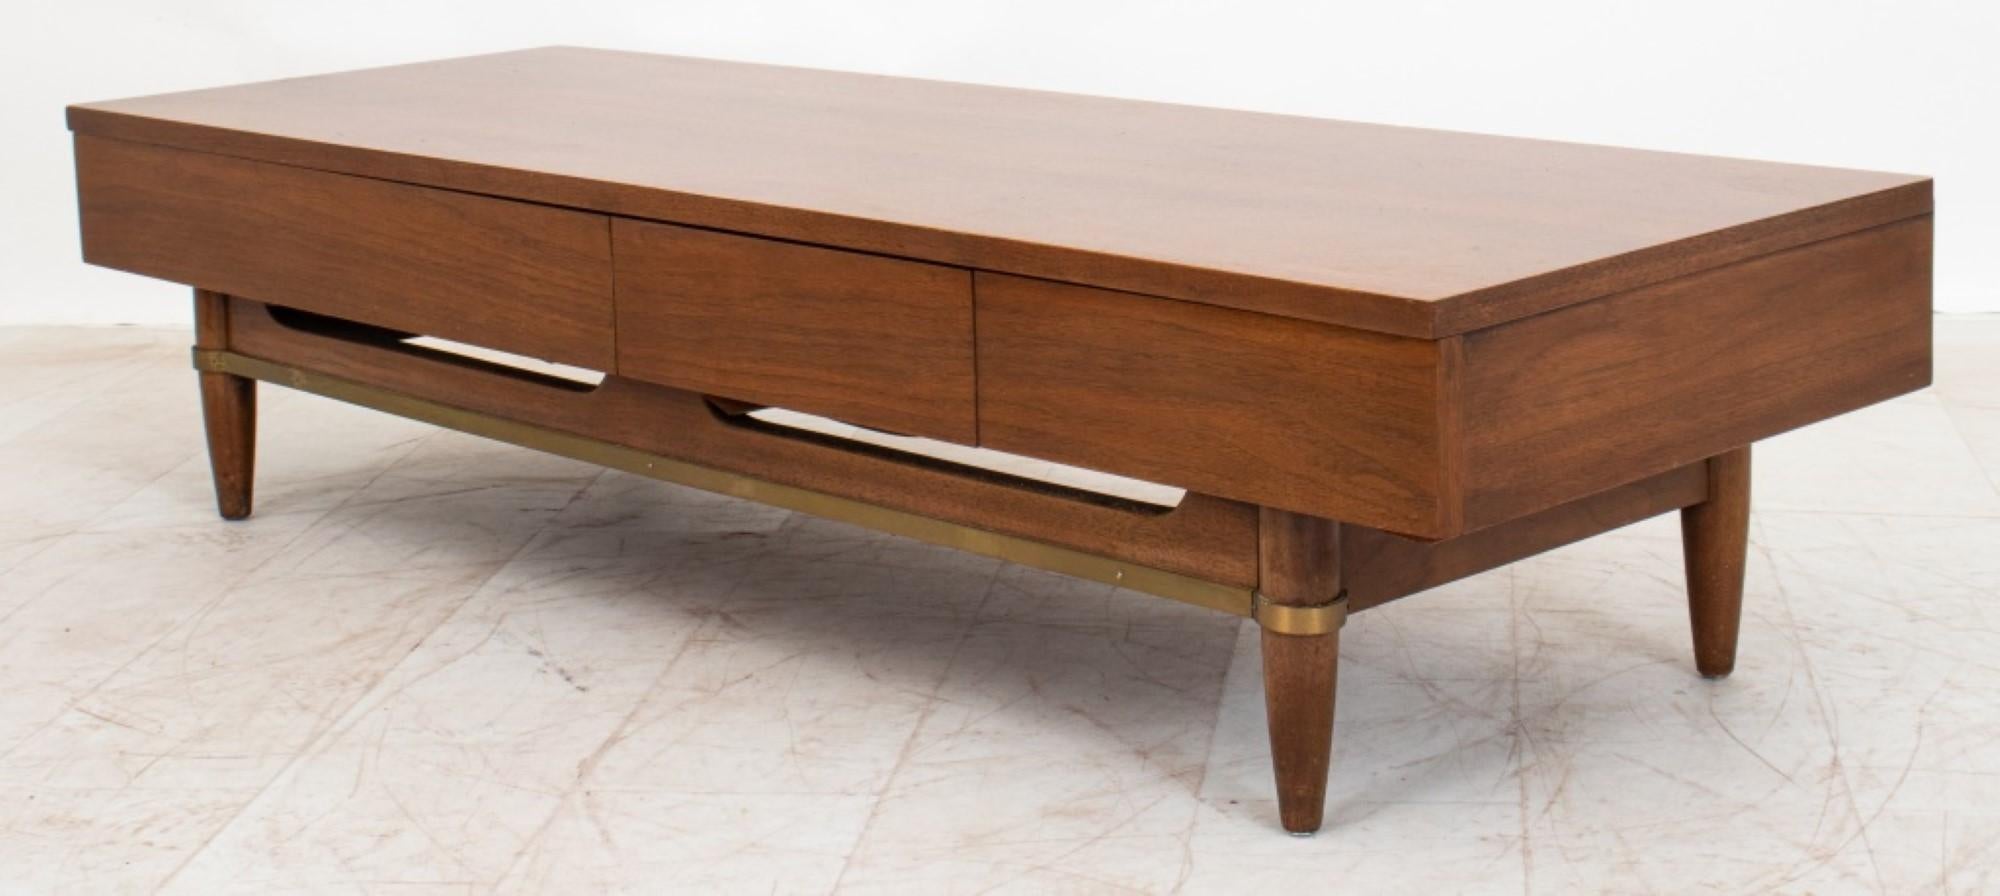 Les dimensions de la table basse / banc / meuble multimédia Merton Gershon pour American of Martinsville Mid-Century Modern en noyer.

Concessionnaire : S138XX